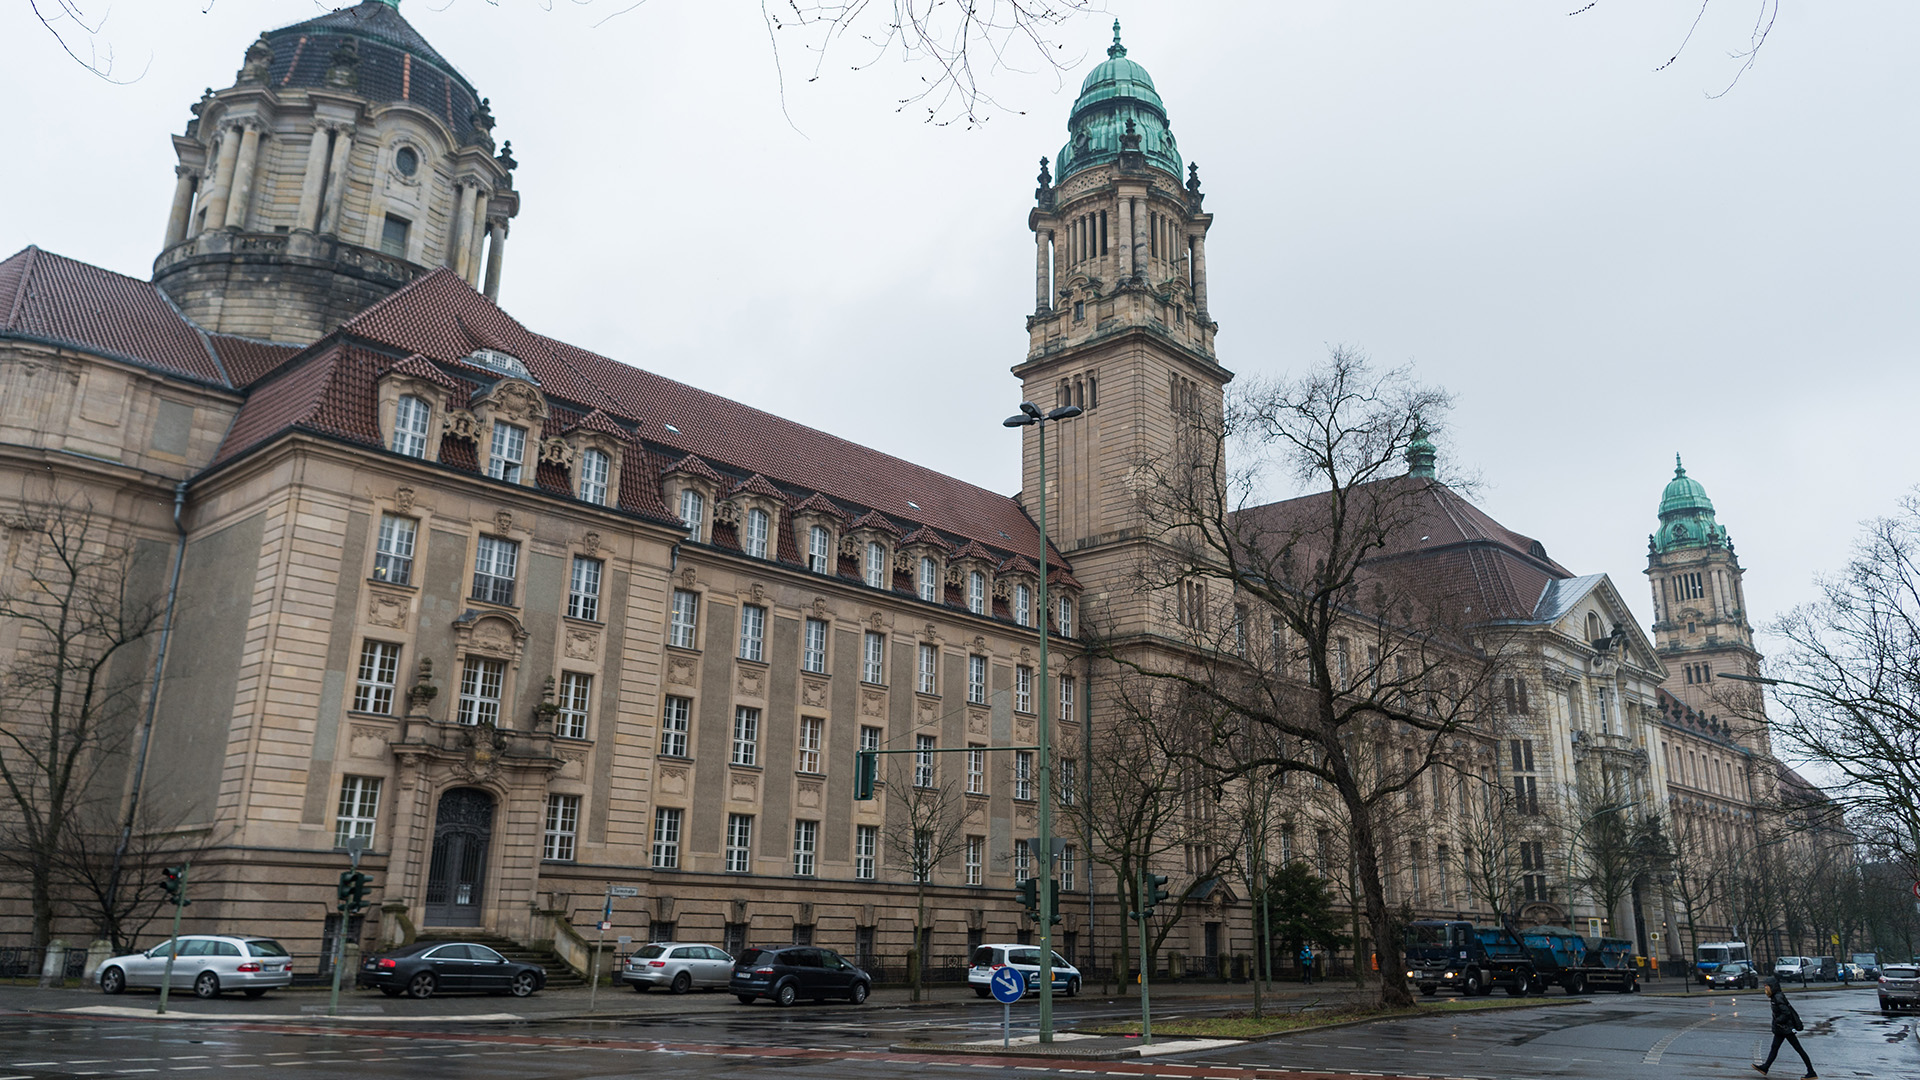 Archivbild: Das Amtsgericht Tiergarten in Berlin. (Quelle: dpa/C. Gateau)